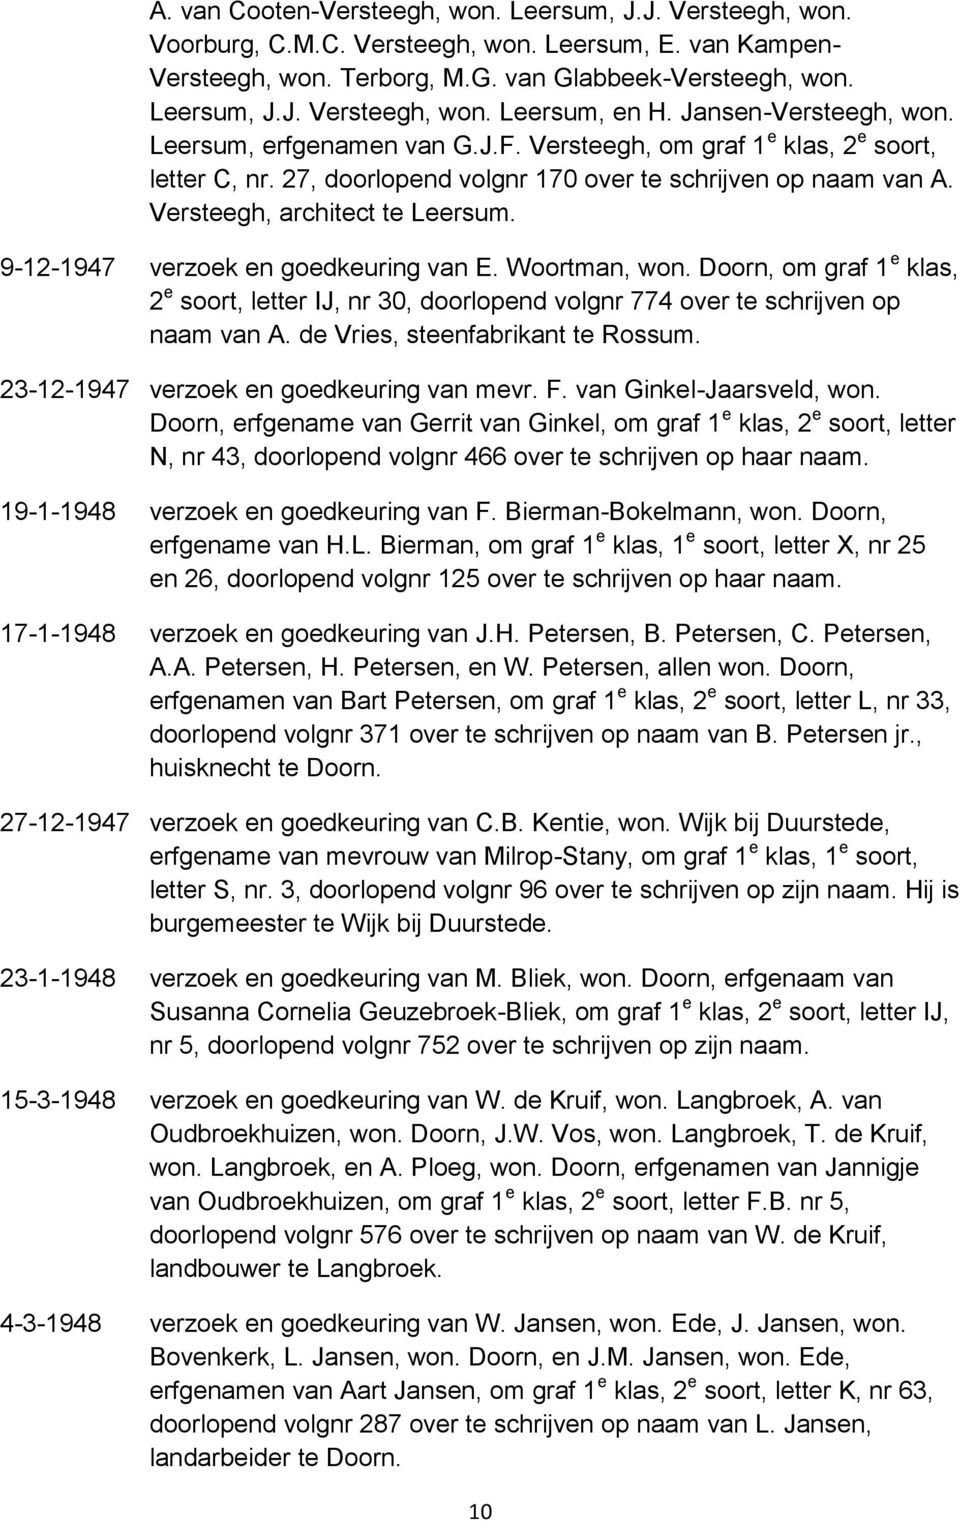 9-12-1947 verzoek en goedkeuring van E. Woortman, won. Doorn, om graf 1 e klas, 2 e soort, letter IJ, nr 30, doorlopend volgnr 774 over te schrijven op naam van A. de Vries, steenfabrikant te Rossum.